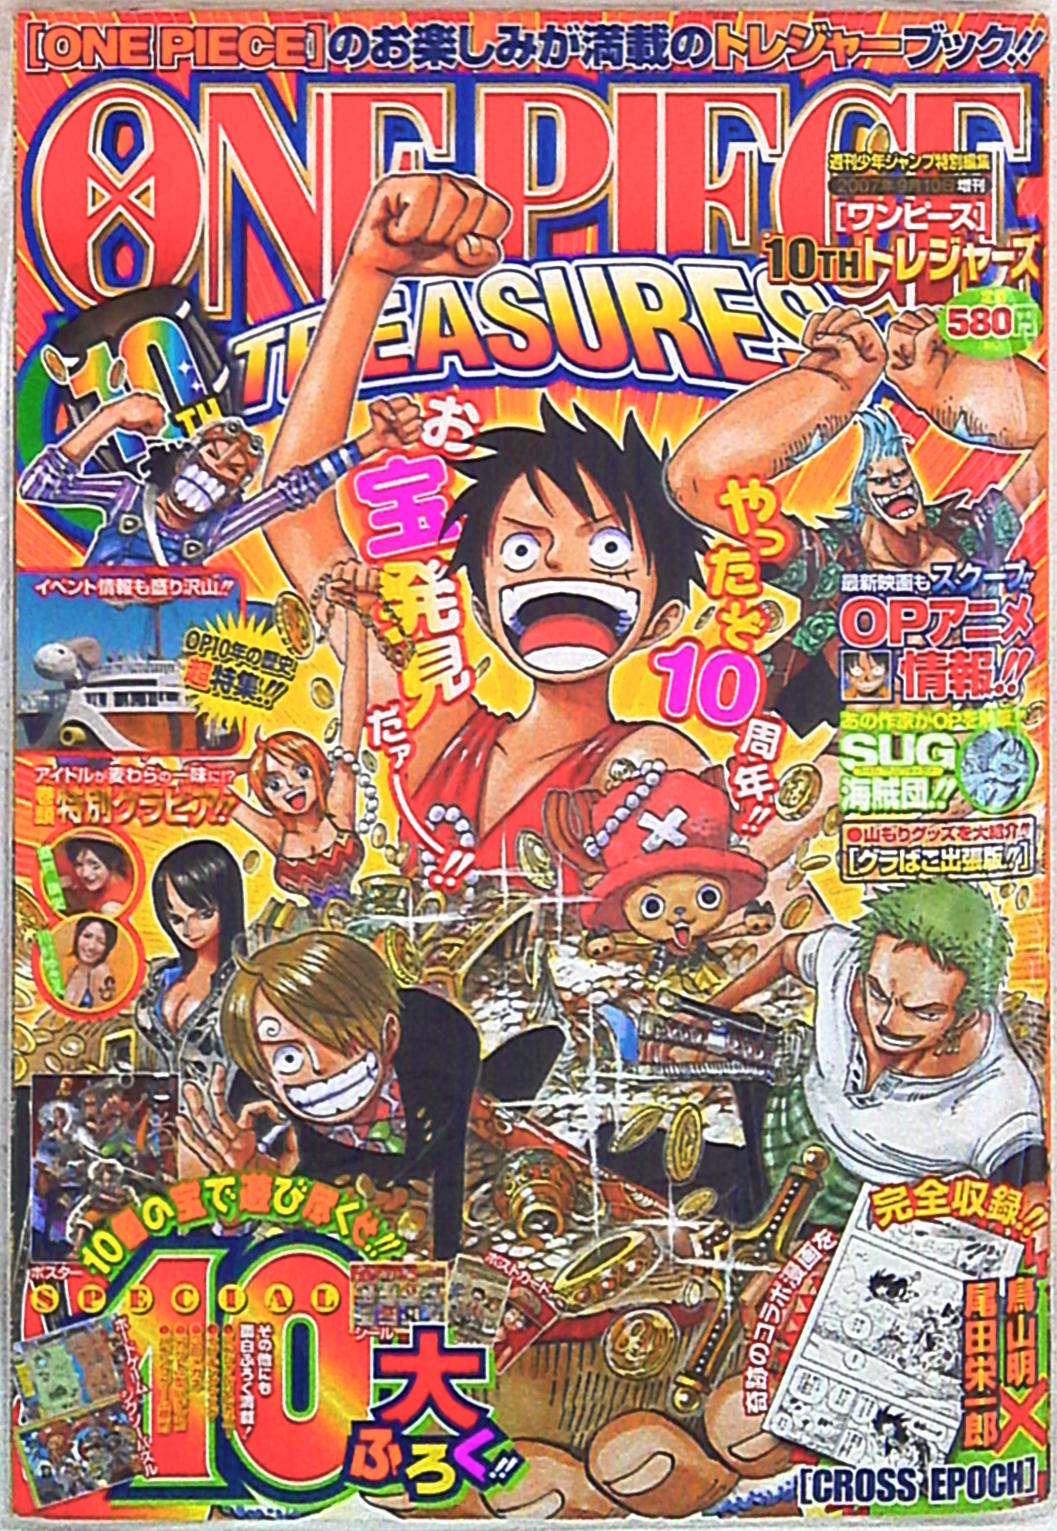 集英社 One Piece 尾田栄一郎 One Piece 総集編 10th Treasures 付録完品 まんだらけ Mandarake